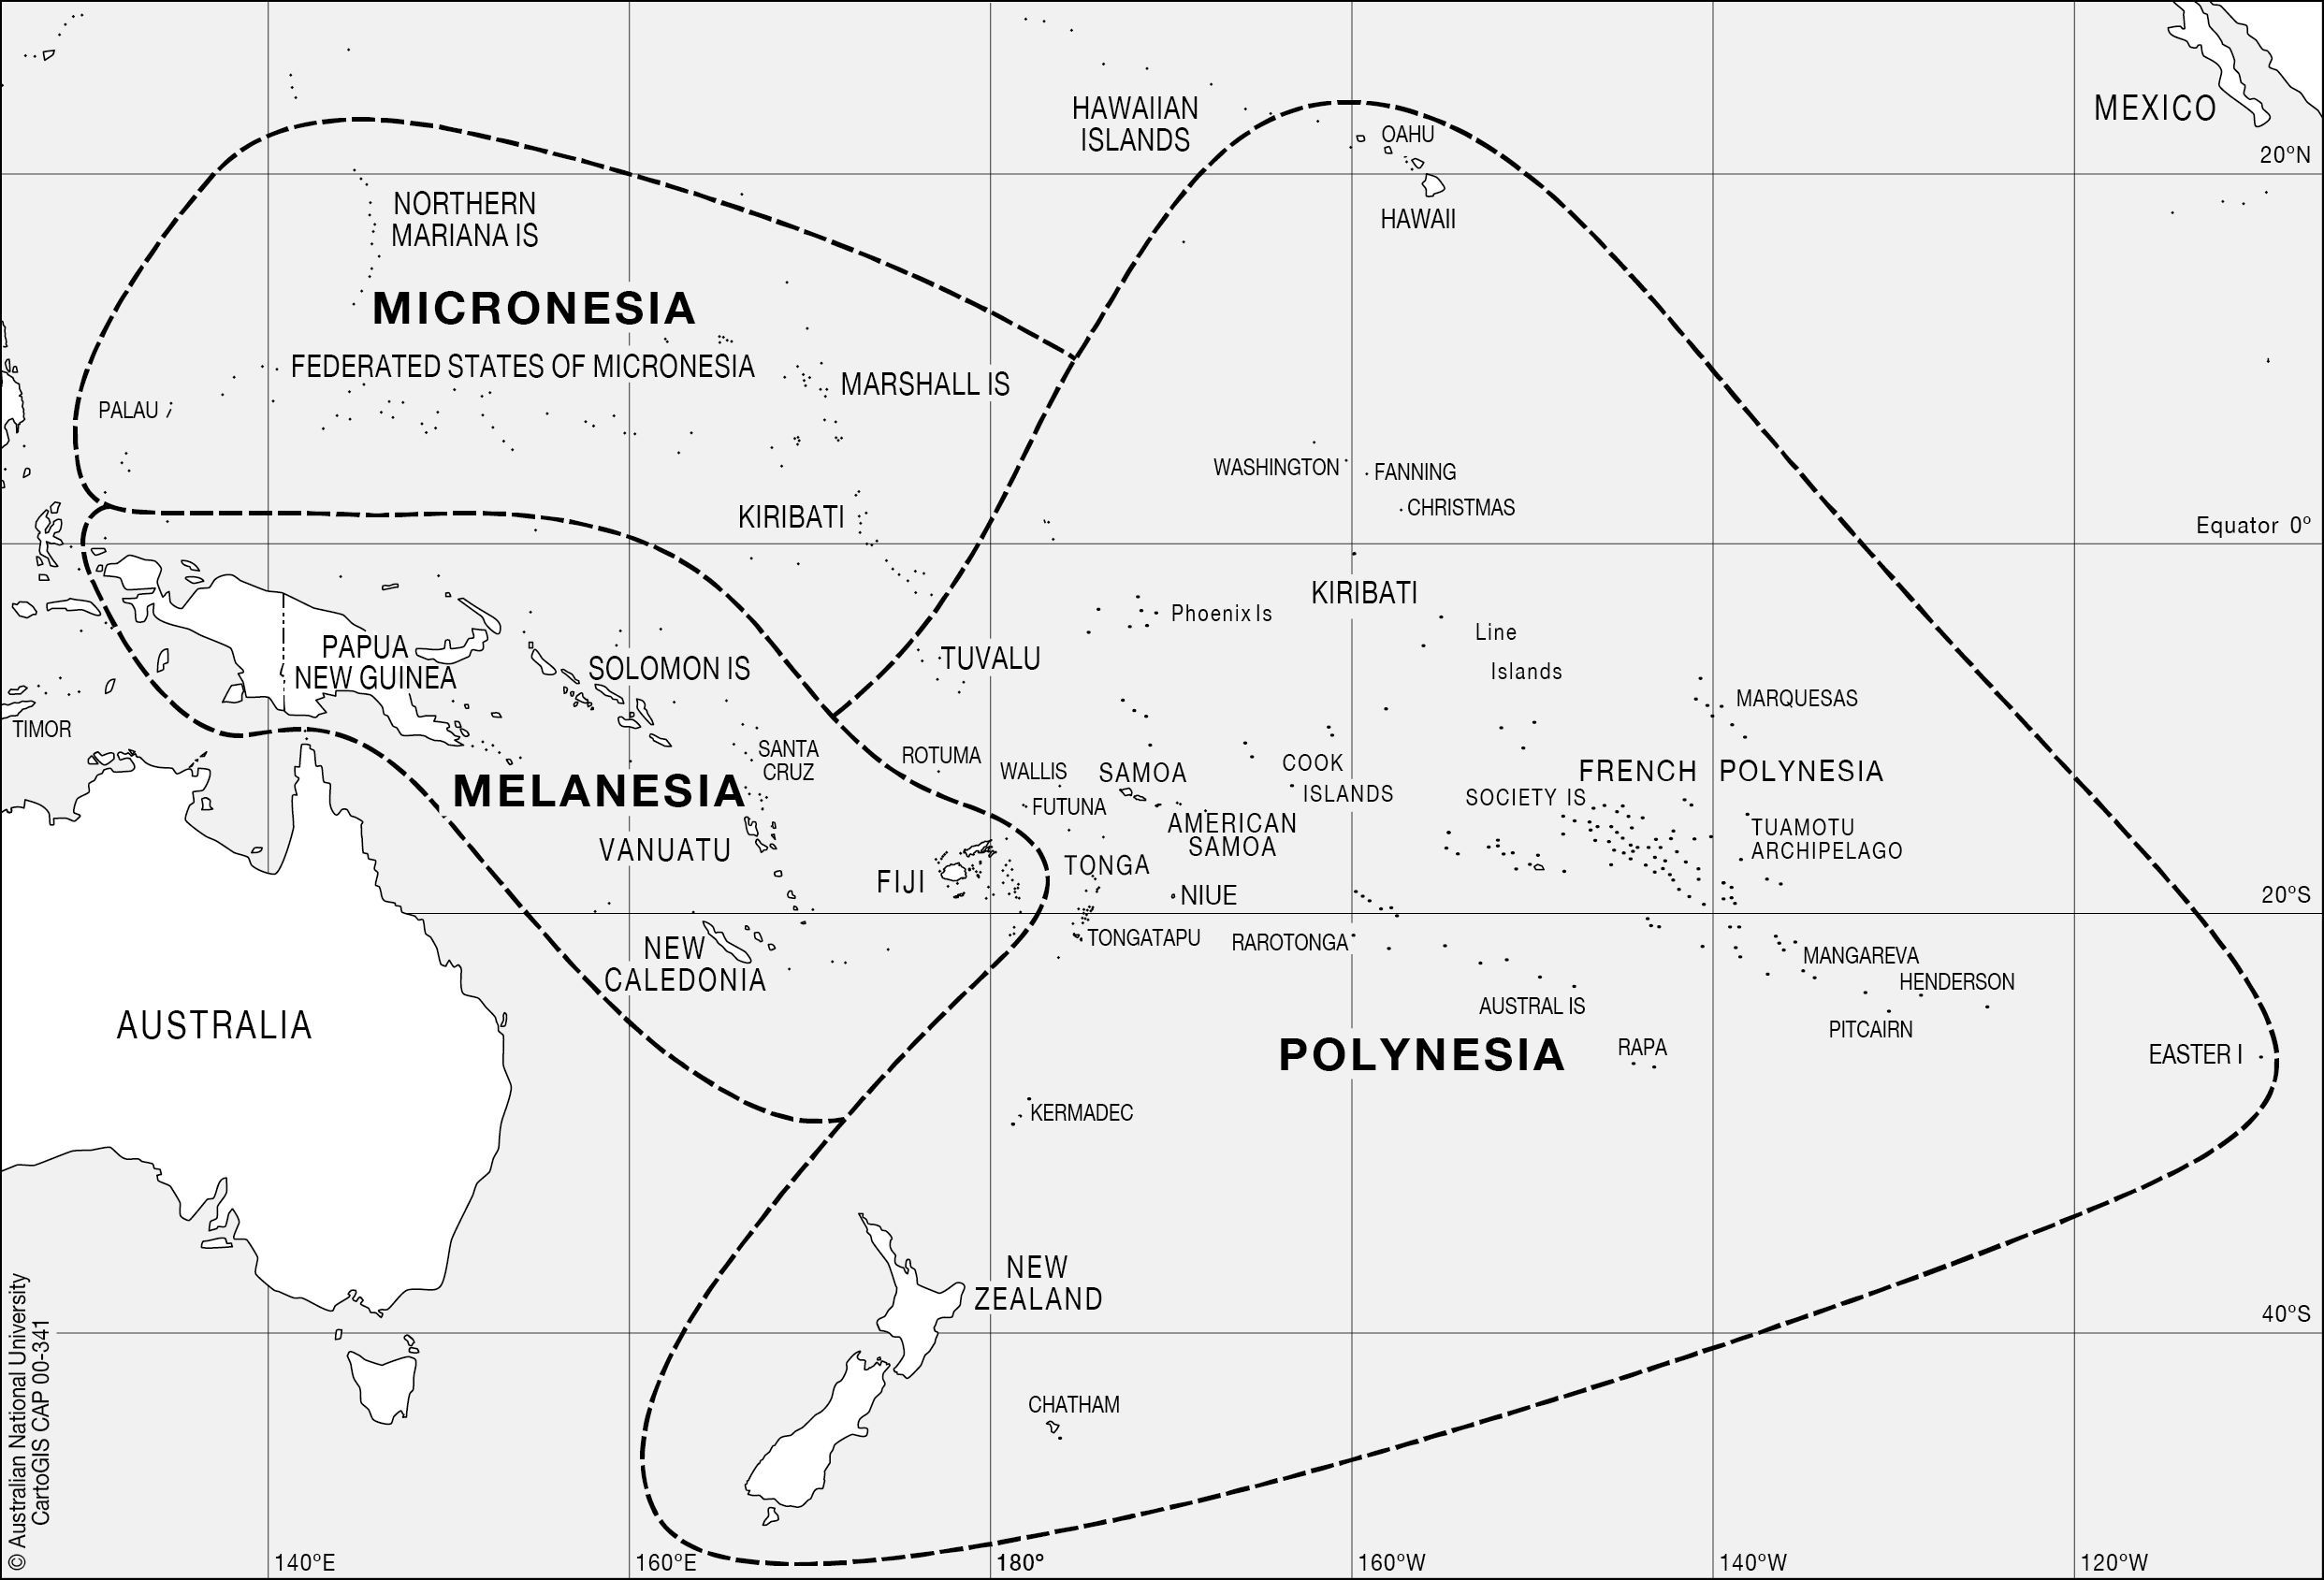 La Oceanía insular pura se divide en 3 subregiones: Micronesia, Melanesia, y Polinesia. ¿Podrías asignar a cada una estas islas?